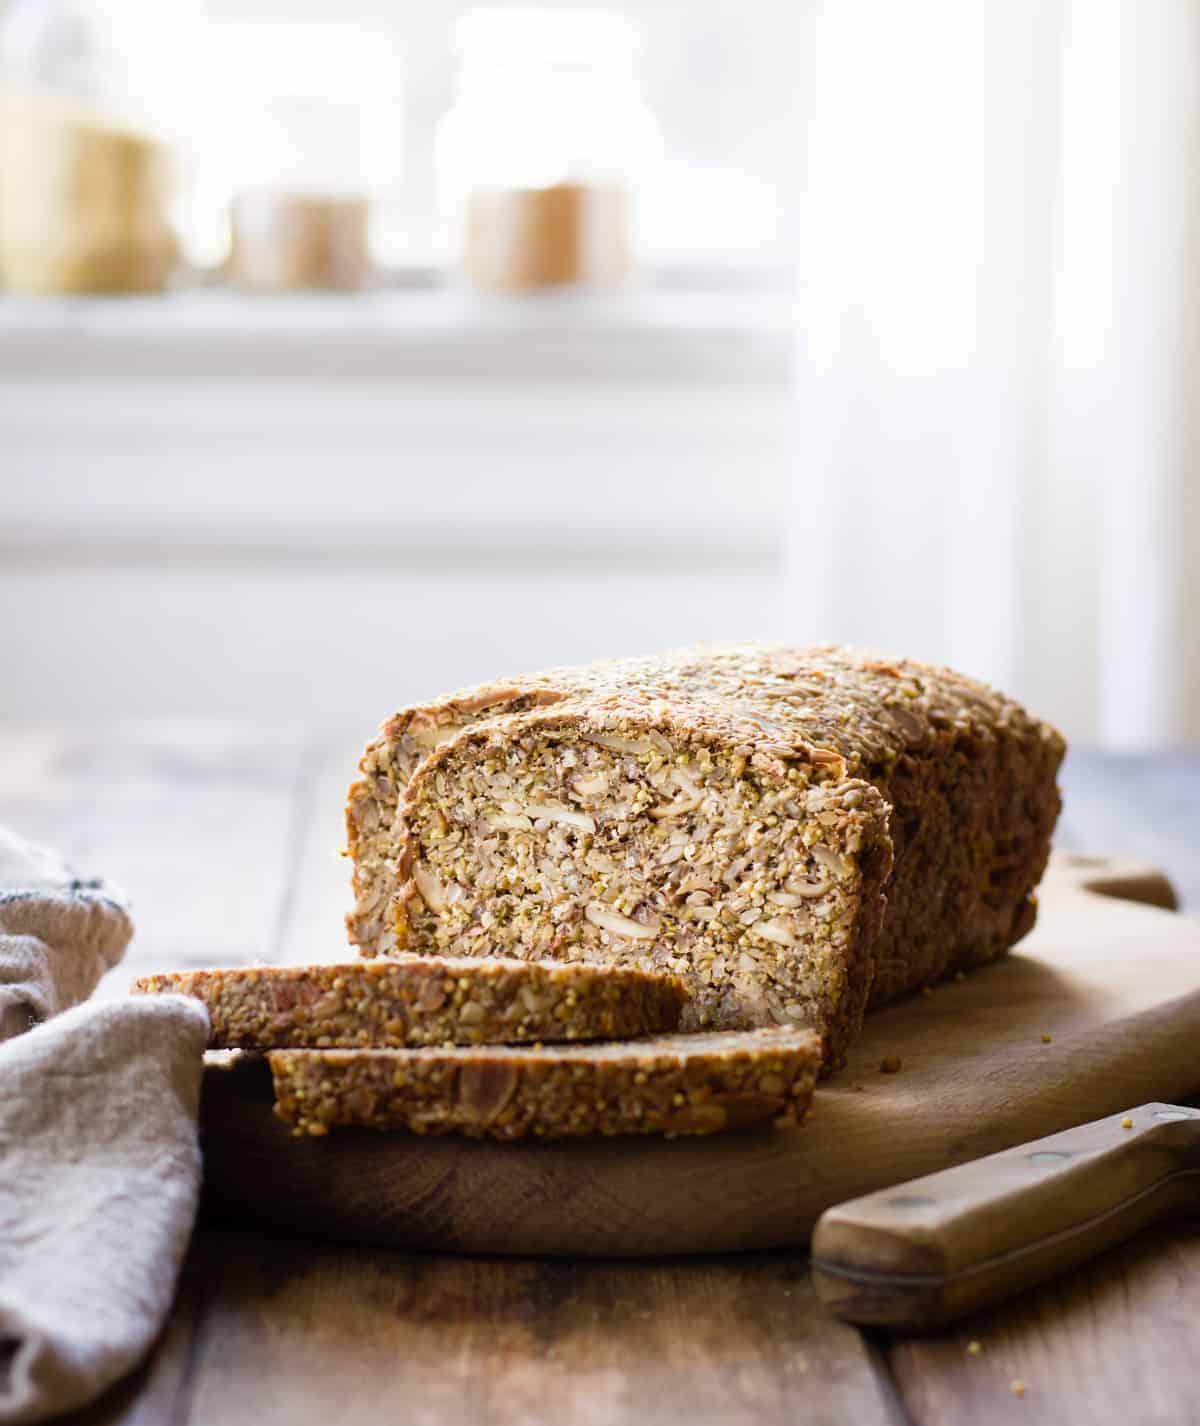 https://bojongourmet.com/wp-content/uploads/2015/03/multi-grain-nut-seed-bread-gluten-free-vegan-lede-42.jpg